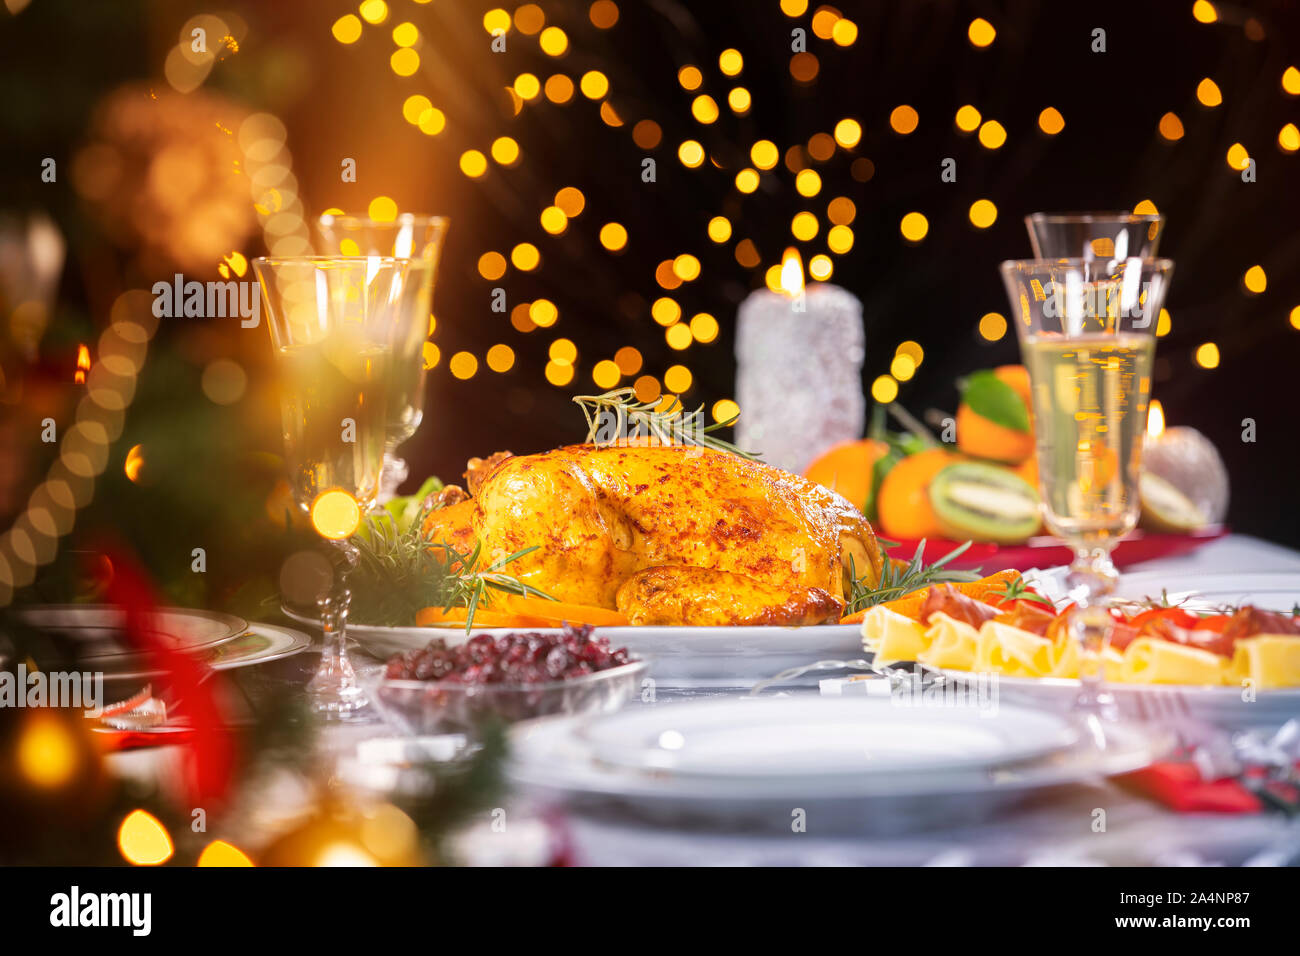 Cena di Natale. Primo piano del gustoso pollo al forno incandescente contro le luci di Natale e candele accese. Vacanza decorate tabella, albero di Natale, Foto Stock